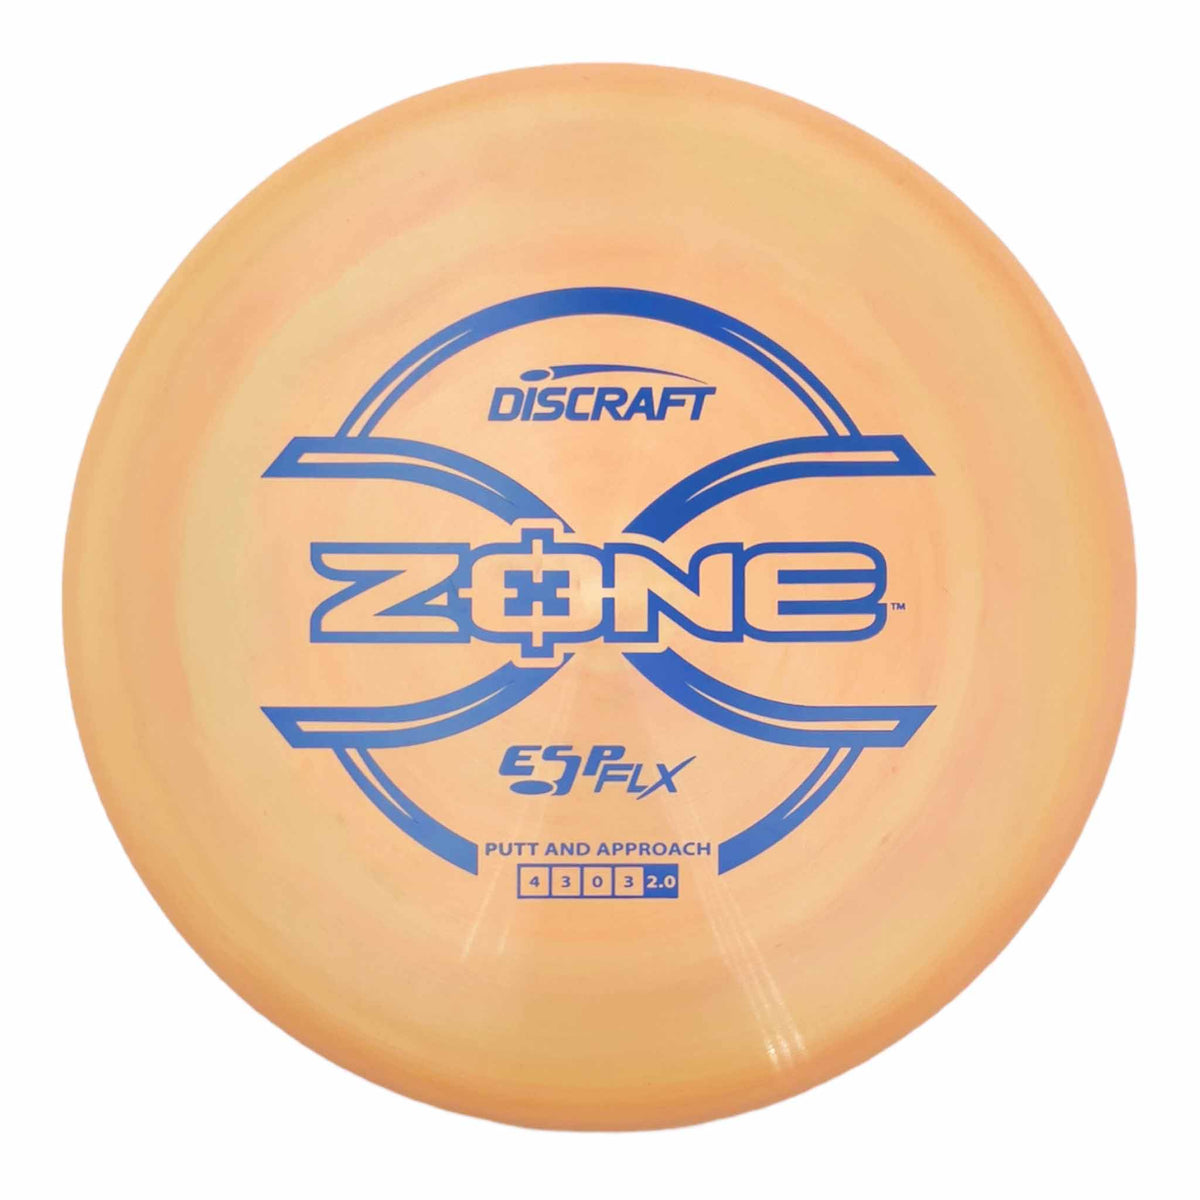 Discraft ESP FLX Zone putter and approach - Orange / Blue